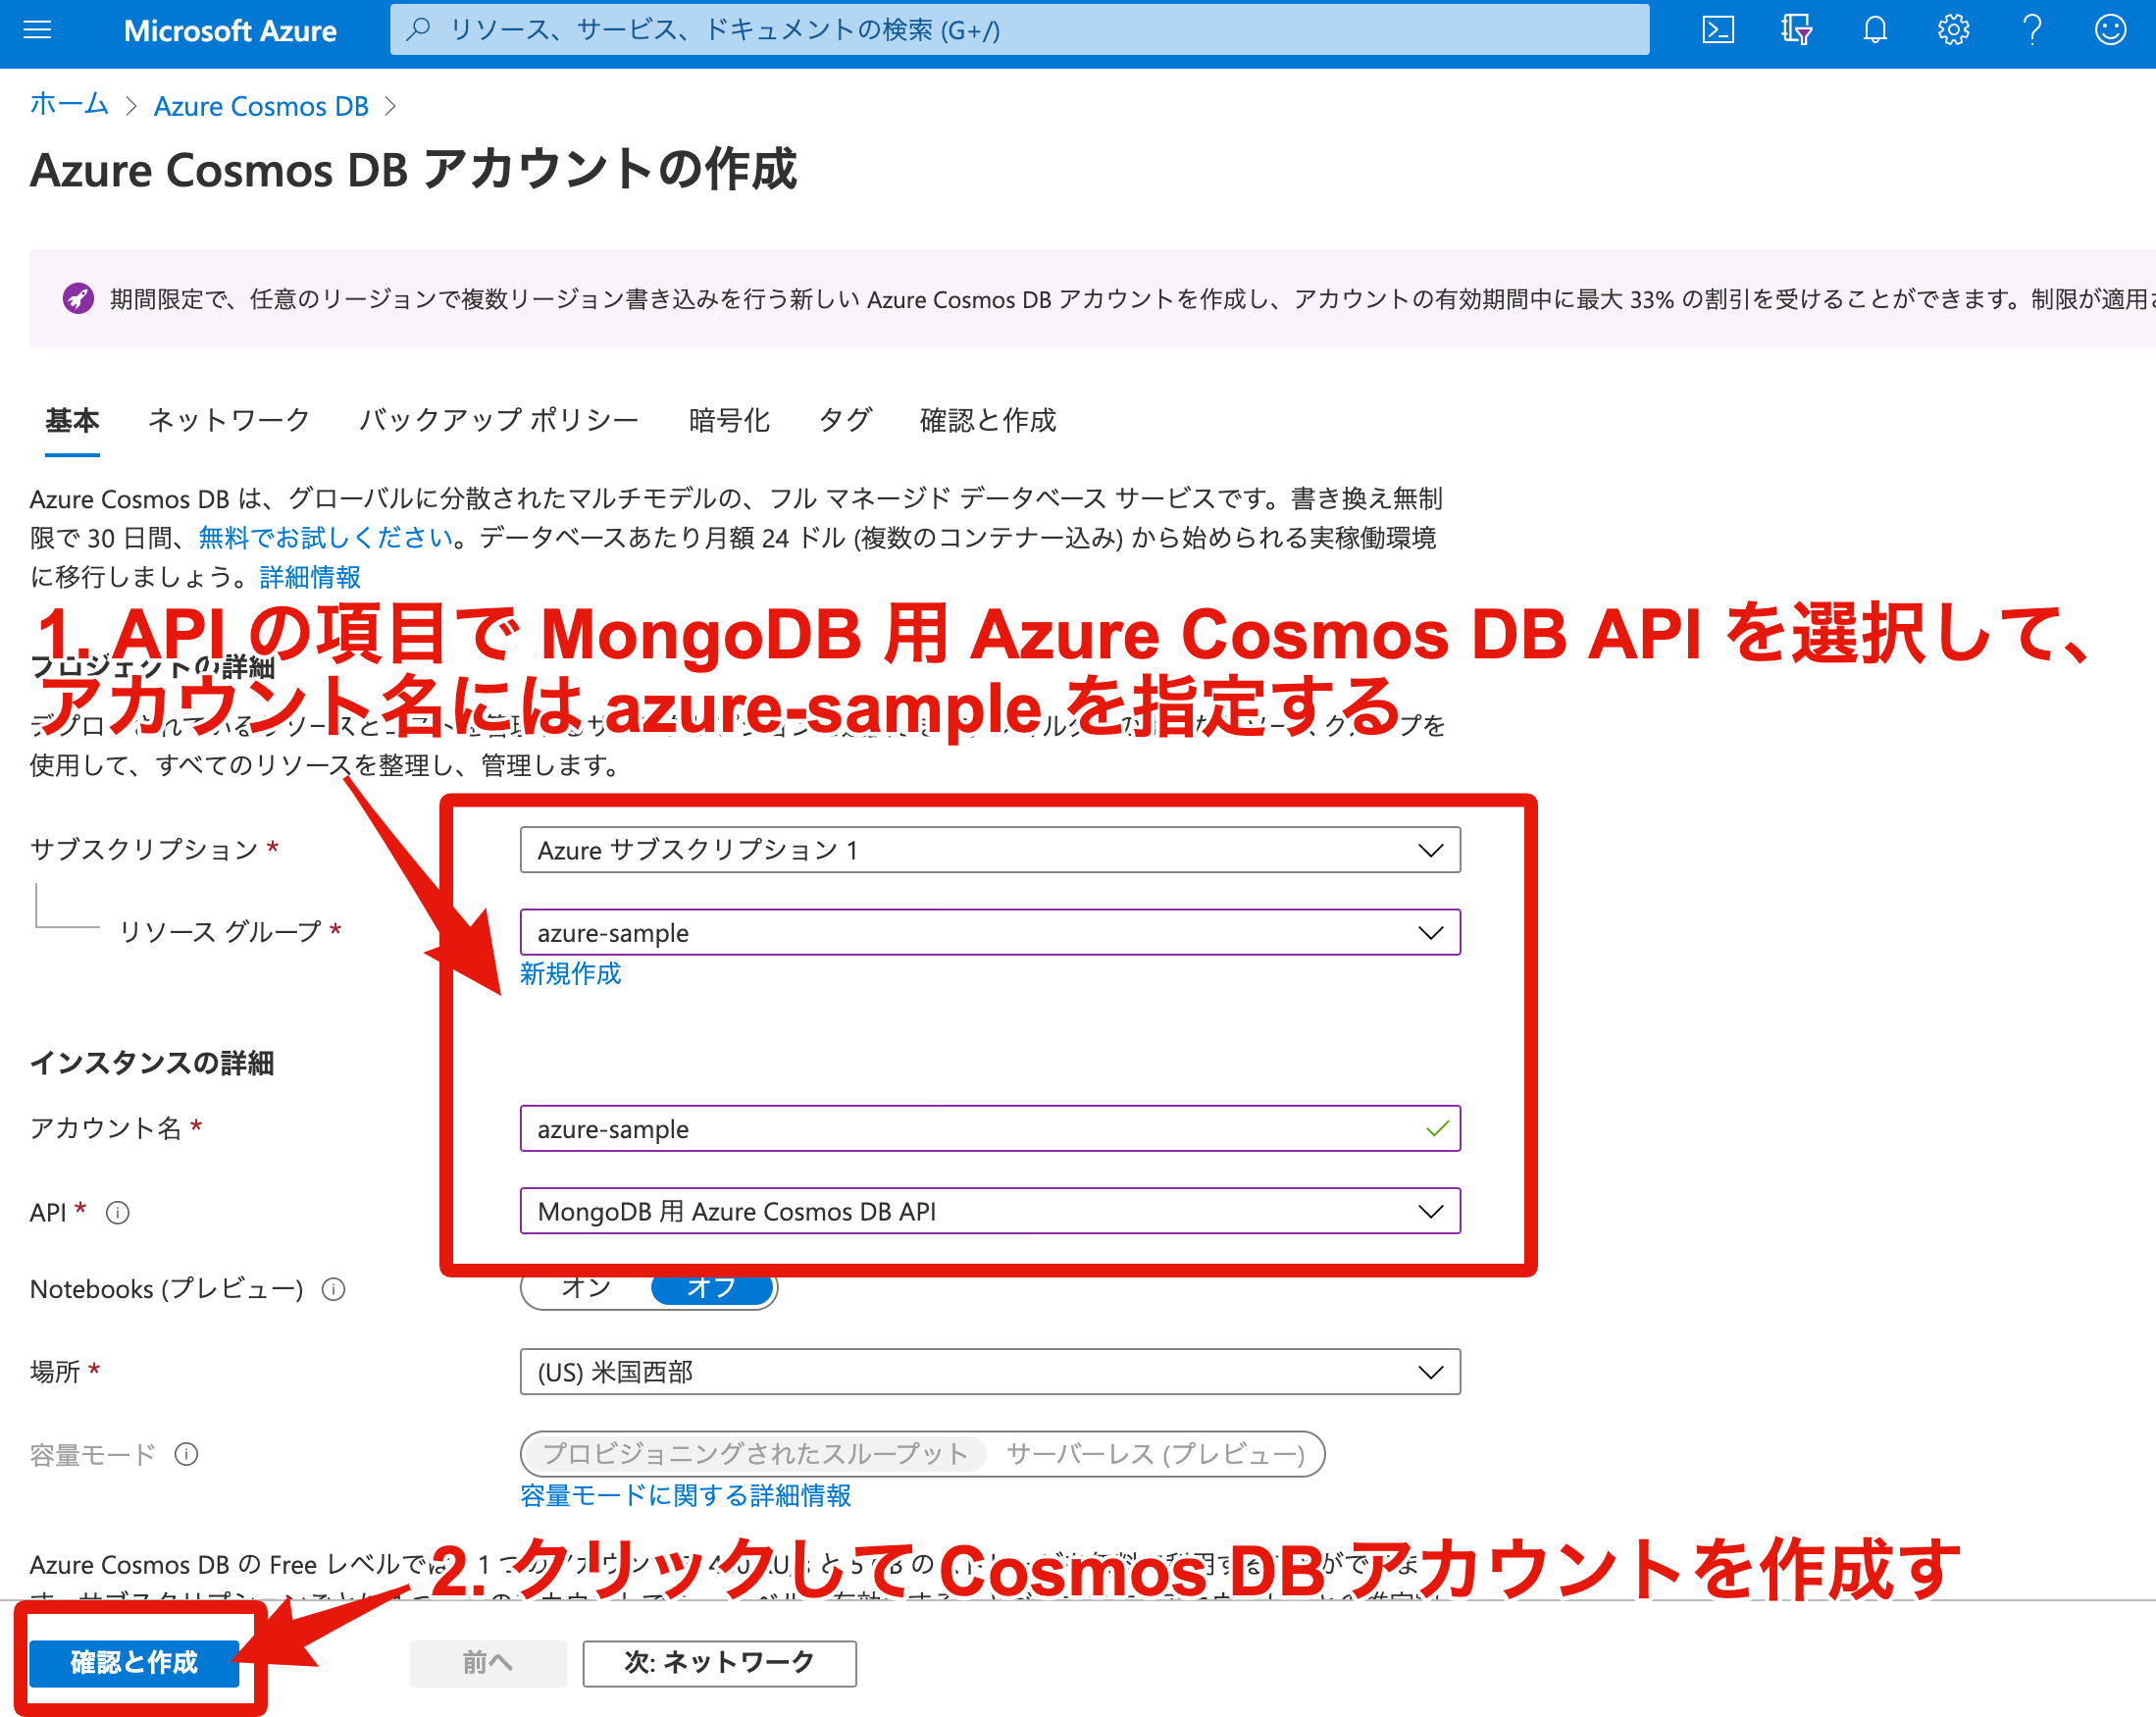 1. Azure Cosmos DB アカウントの作成ページから Azure Cosmos DB アカウントを作成する。API には `MongoDB~` を選択する